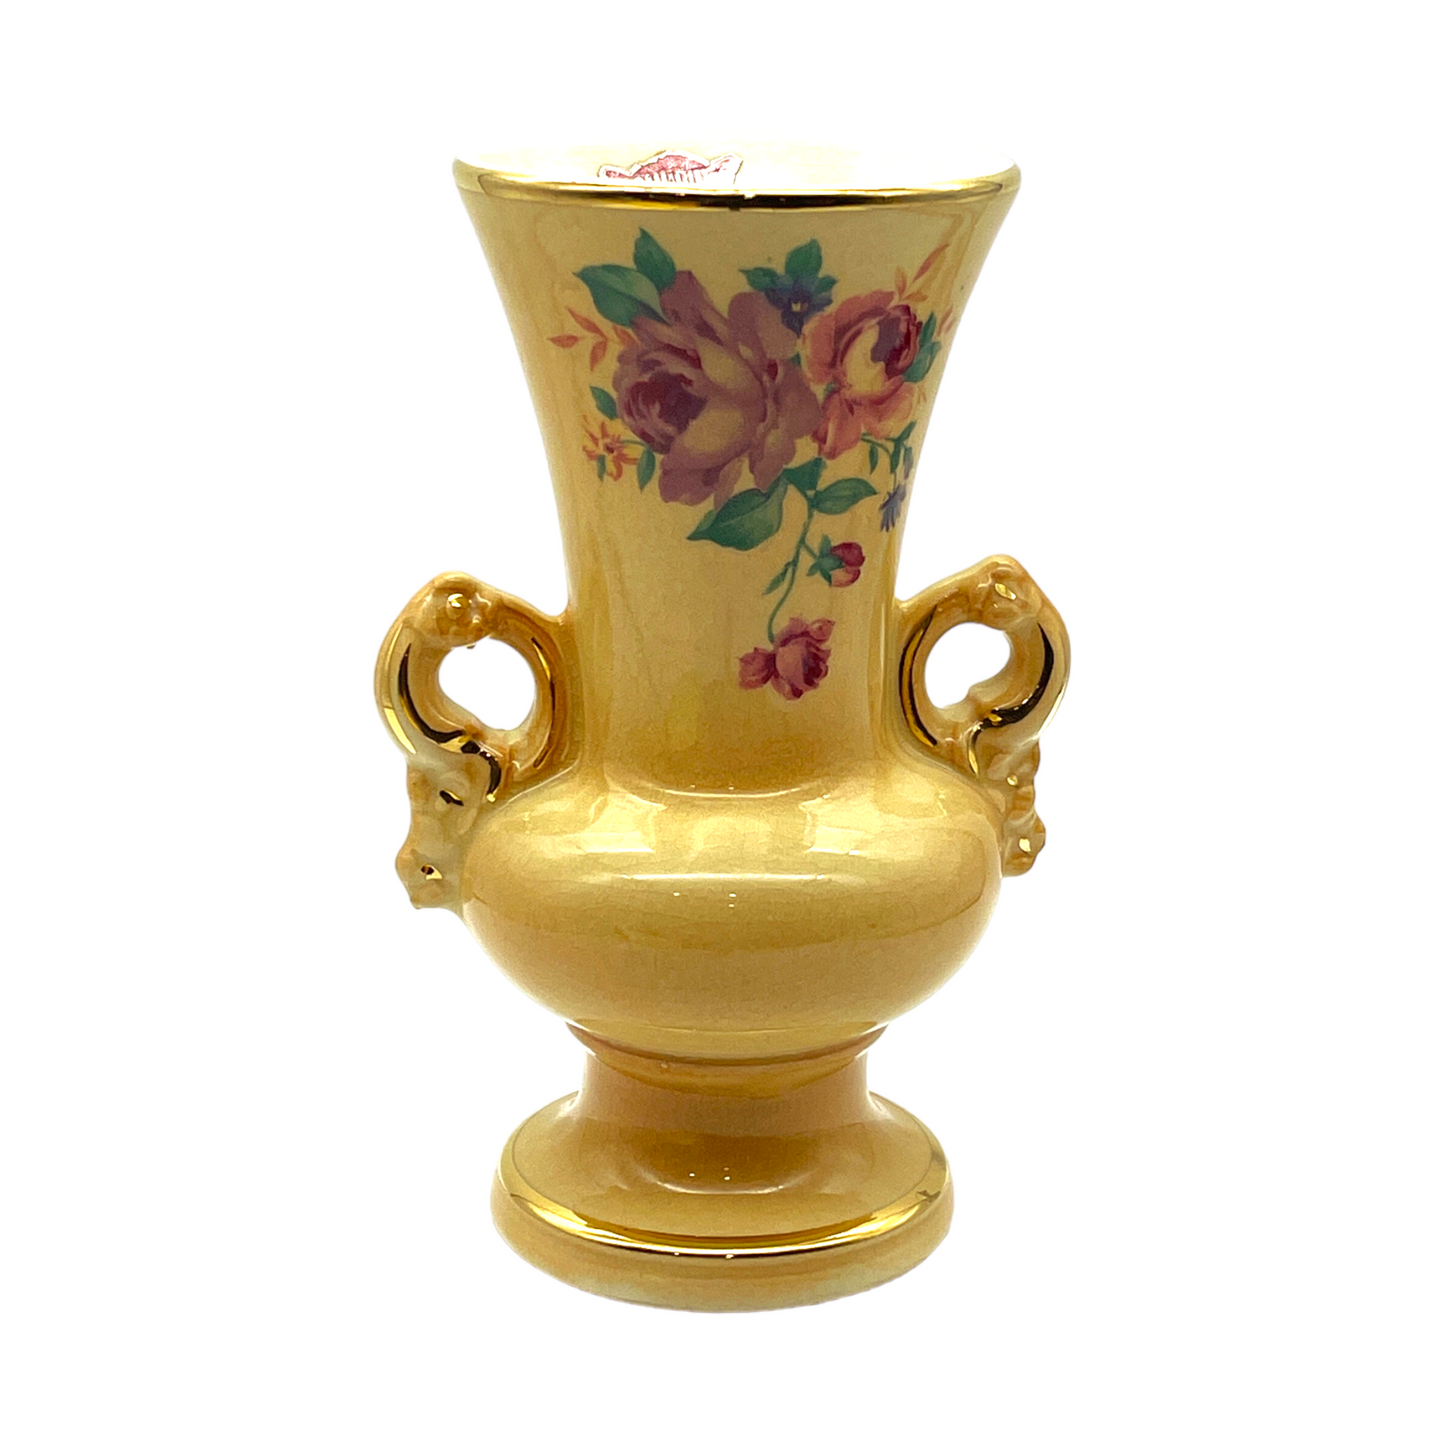 Spaulding China - Double Handle Gold Trim Osbourne Decal Vase - Vintage - 6"